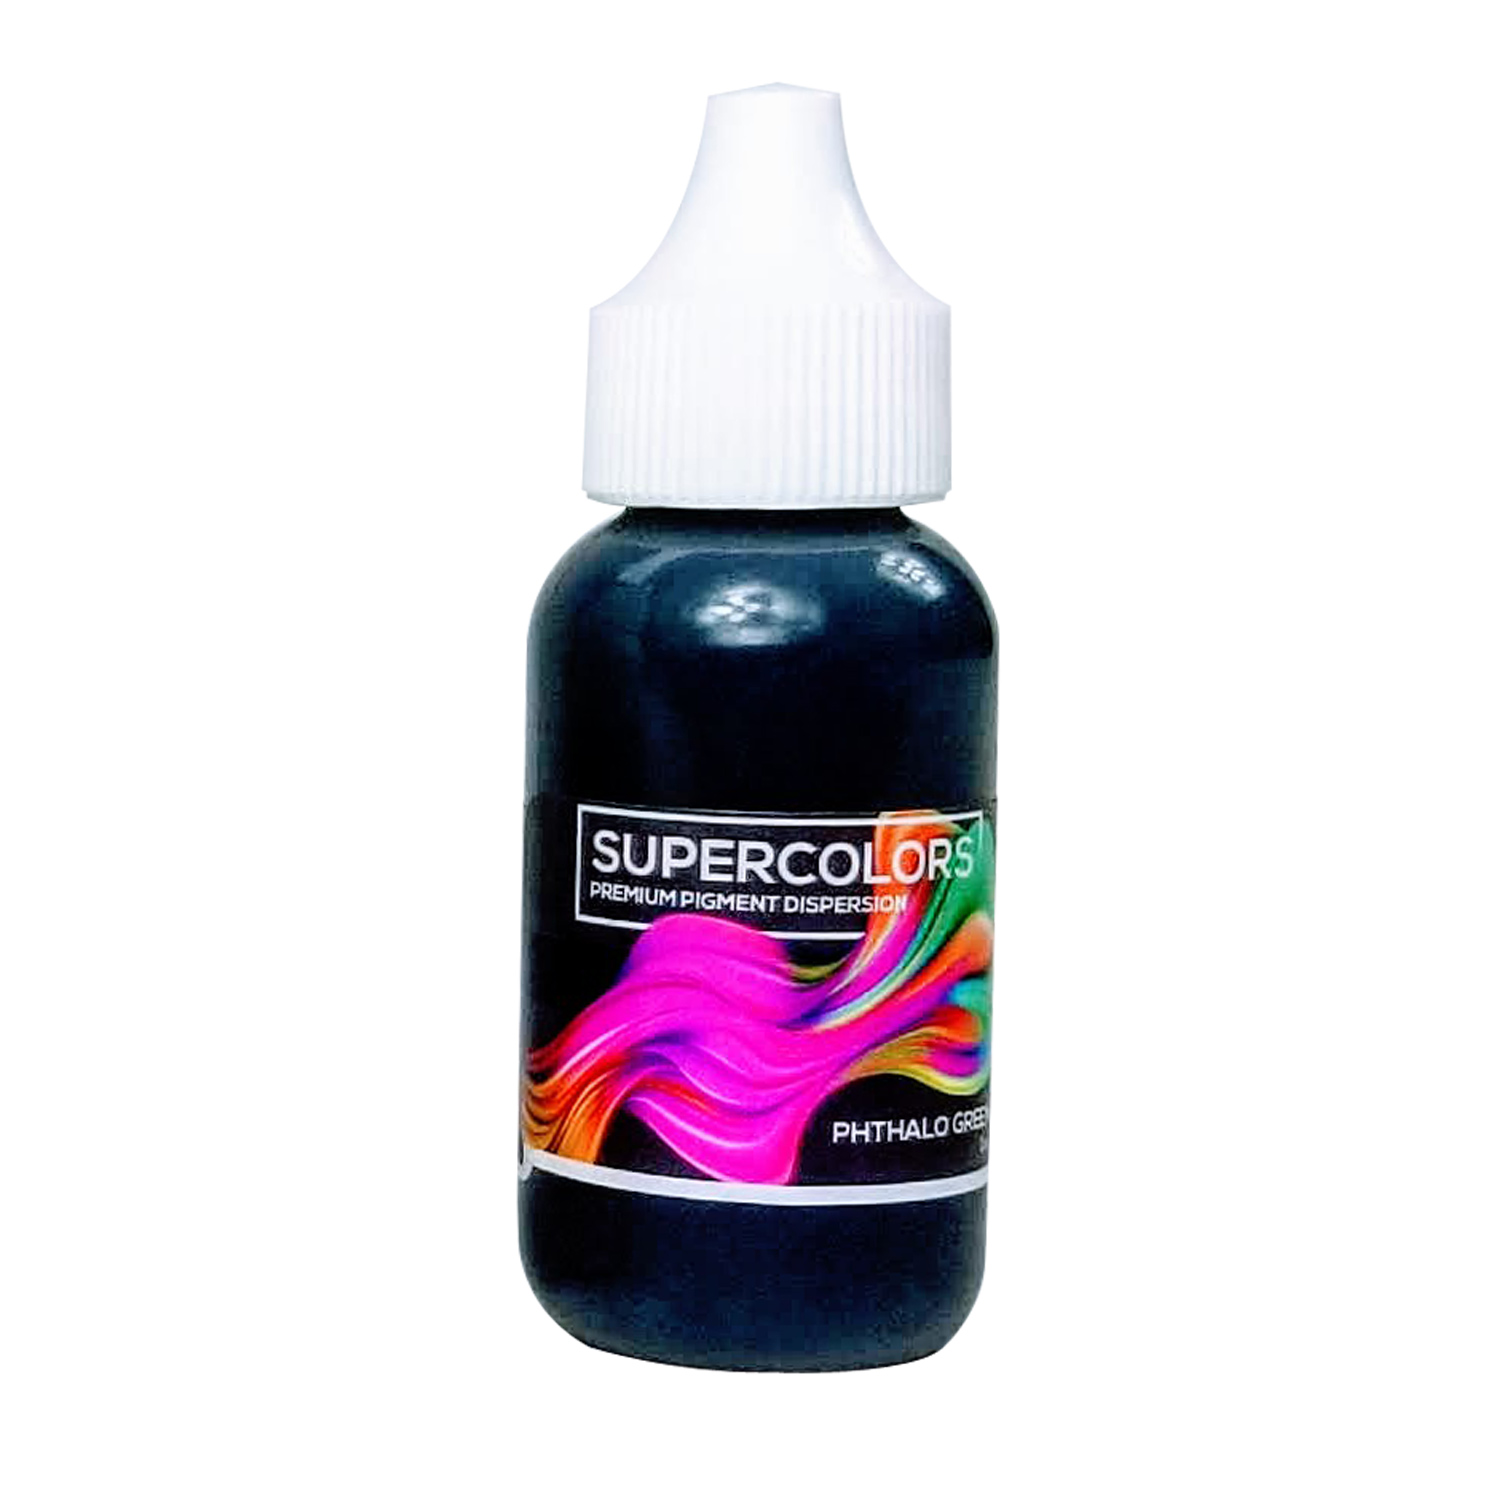 Epoxy Resin Pigment - 10 Color Liquid Epoxy Resin Color